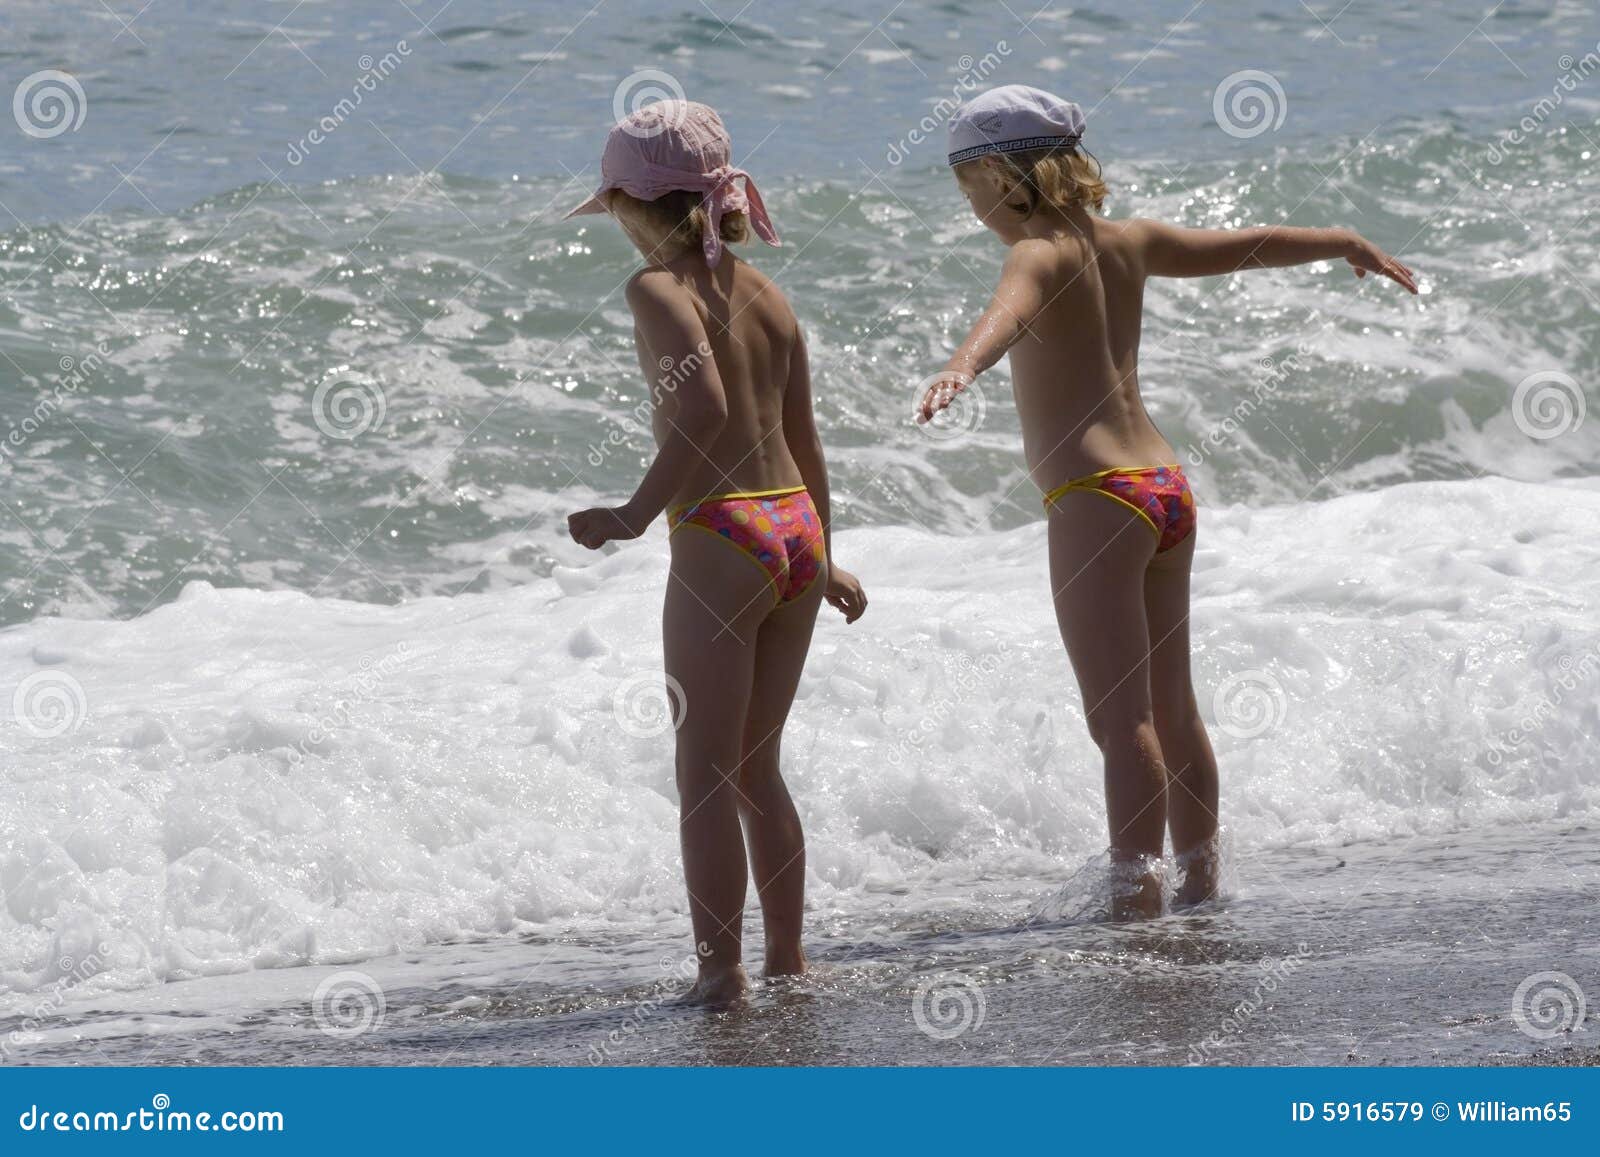 с детьми голым на пляж фото 53